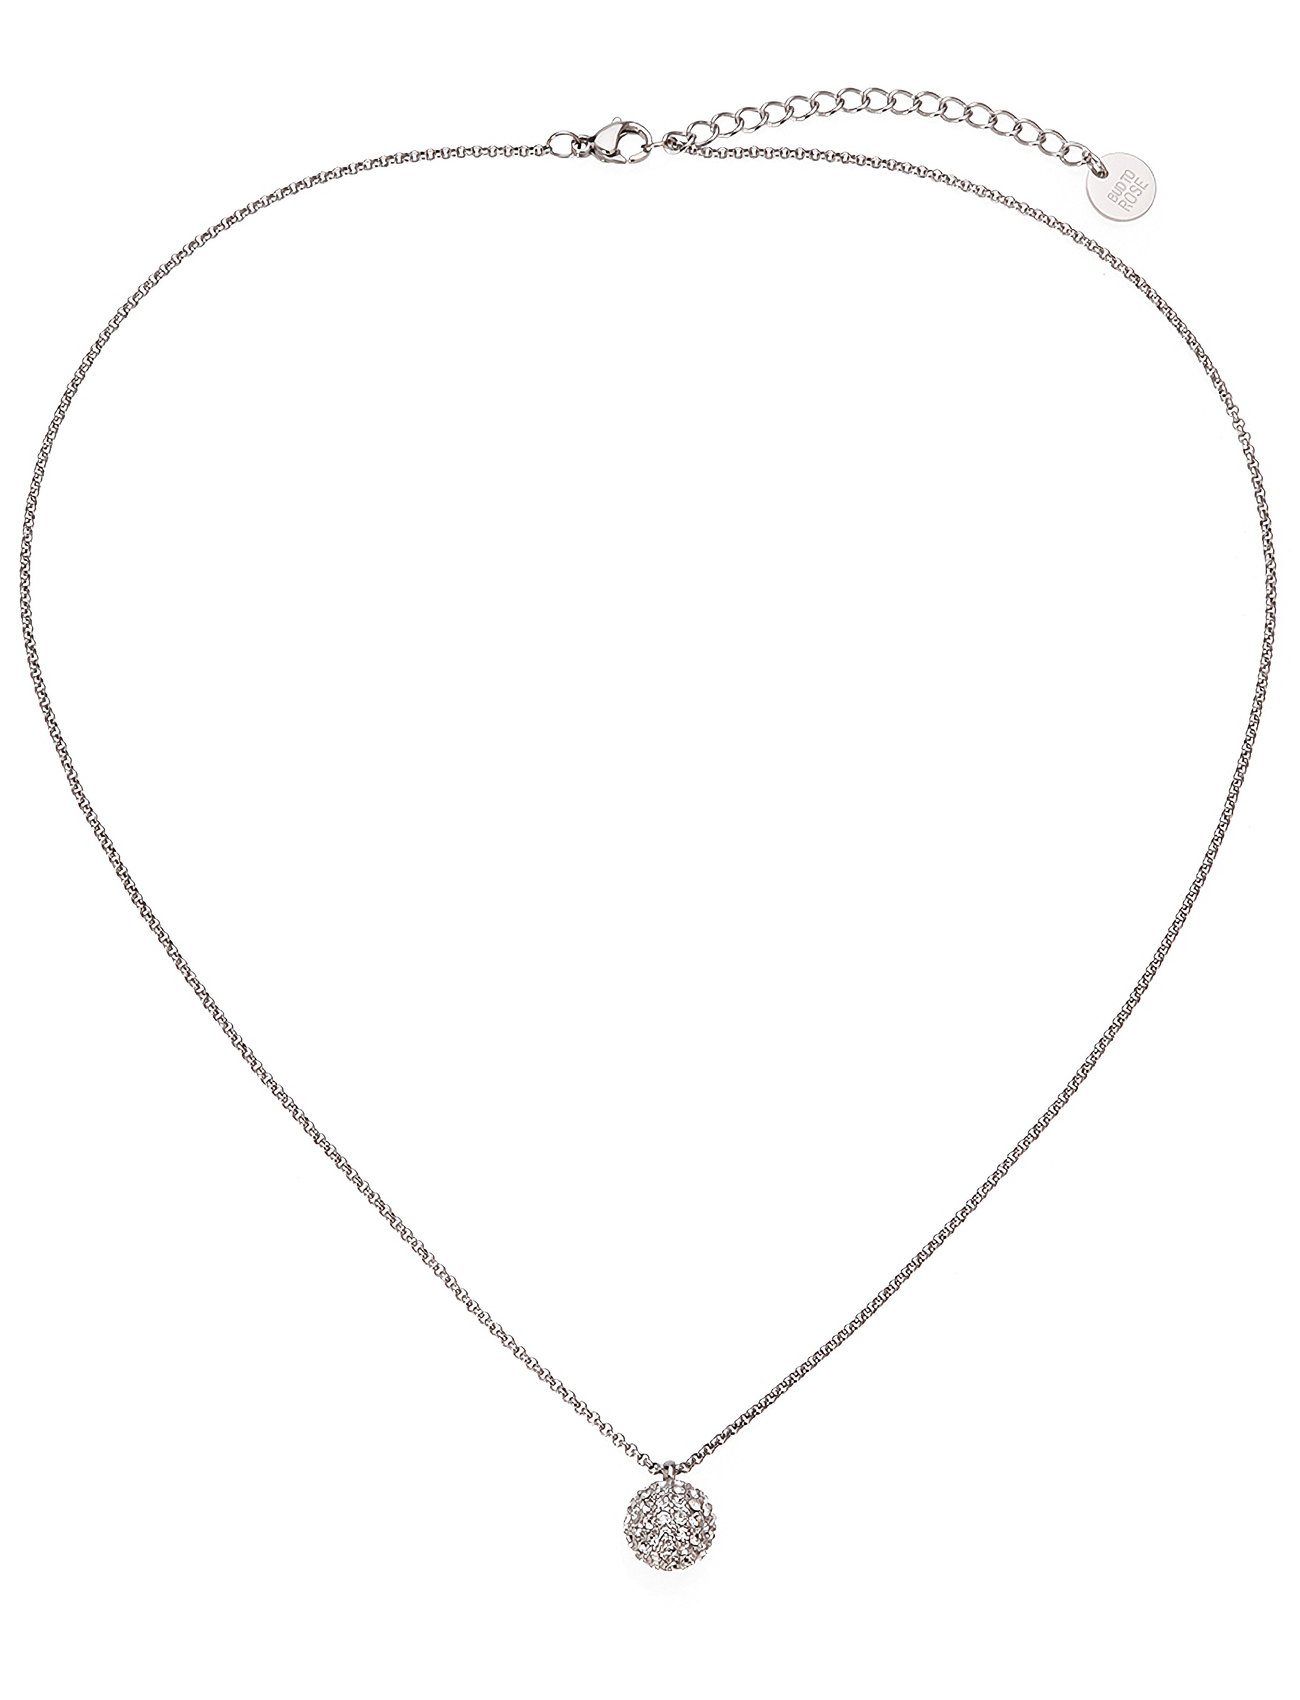 Bud to rose - Bullet Necklace Clear/Silver - halskæder med vedhæng - silver - 1